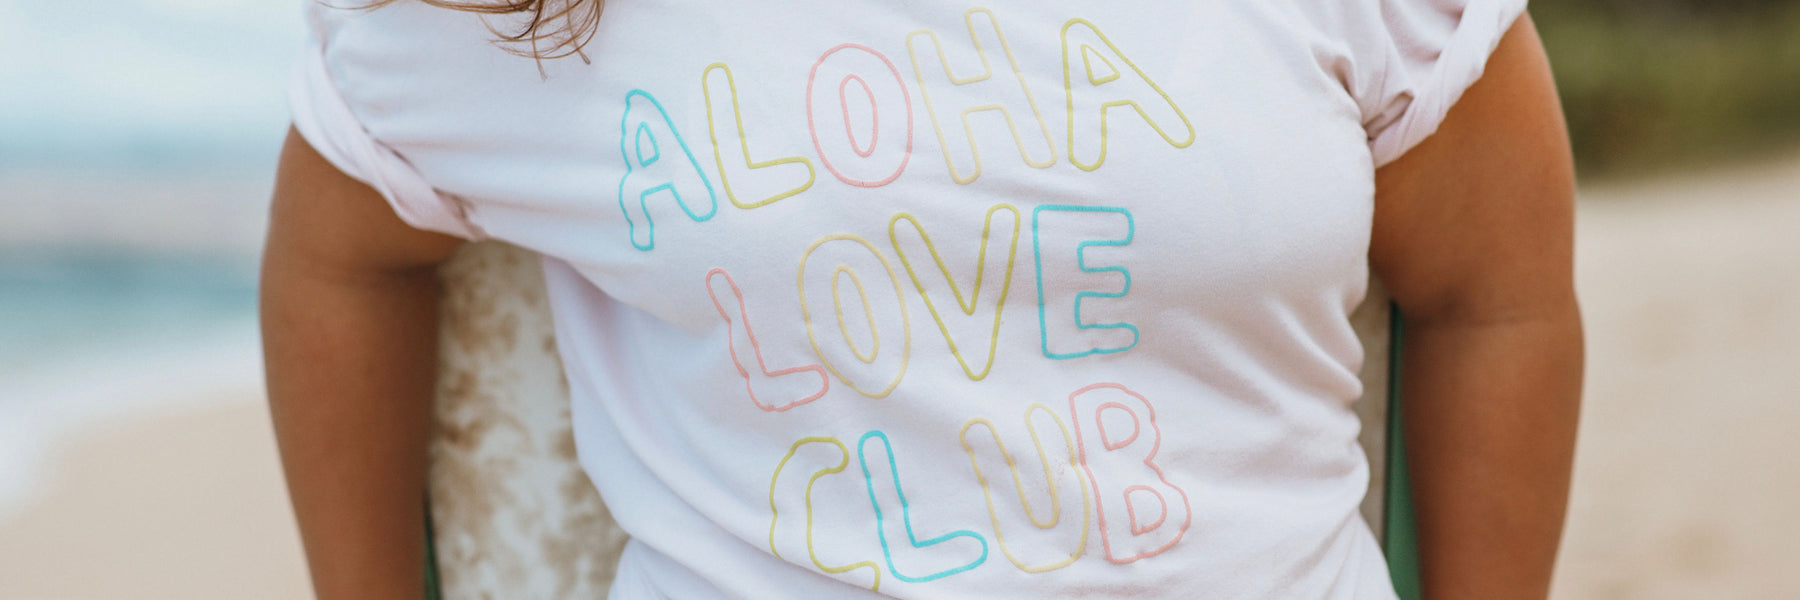 Aloha Love Club